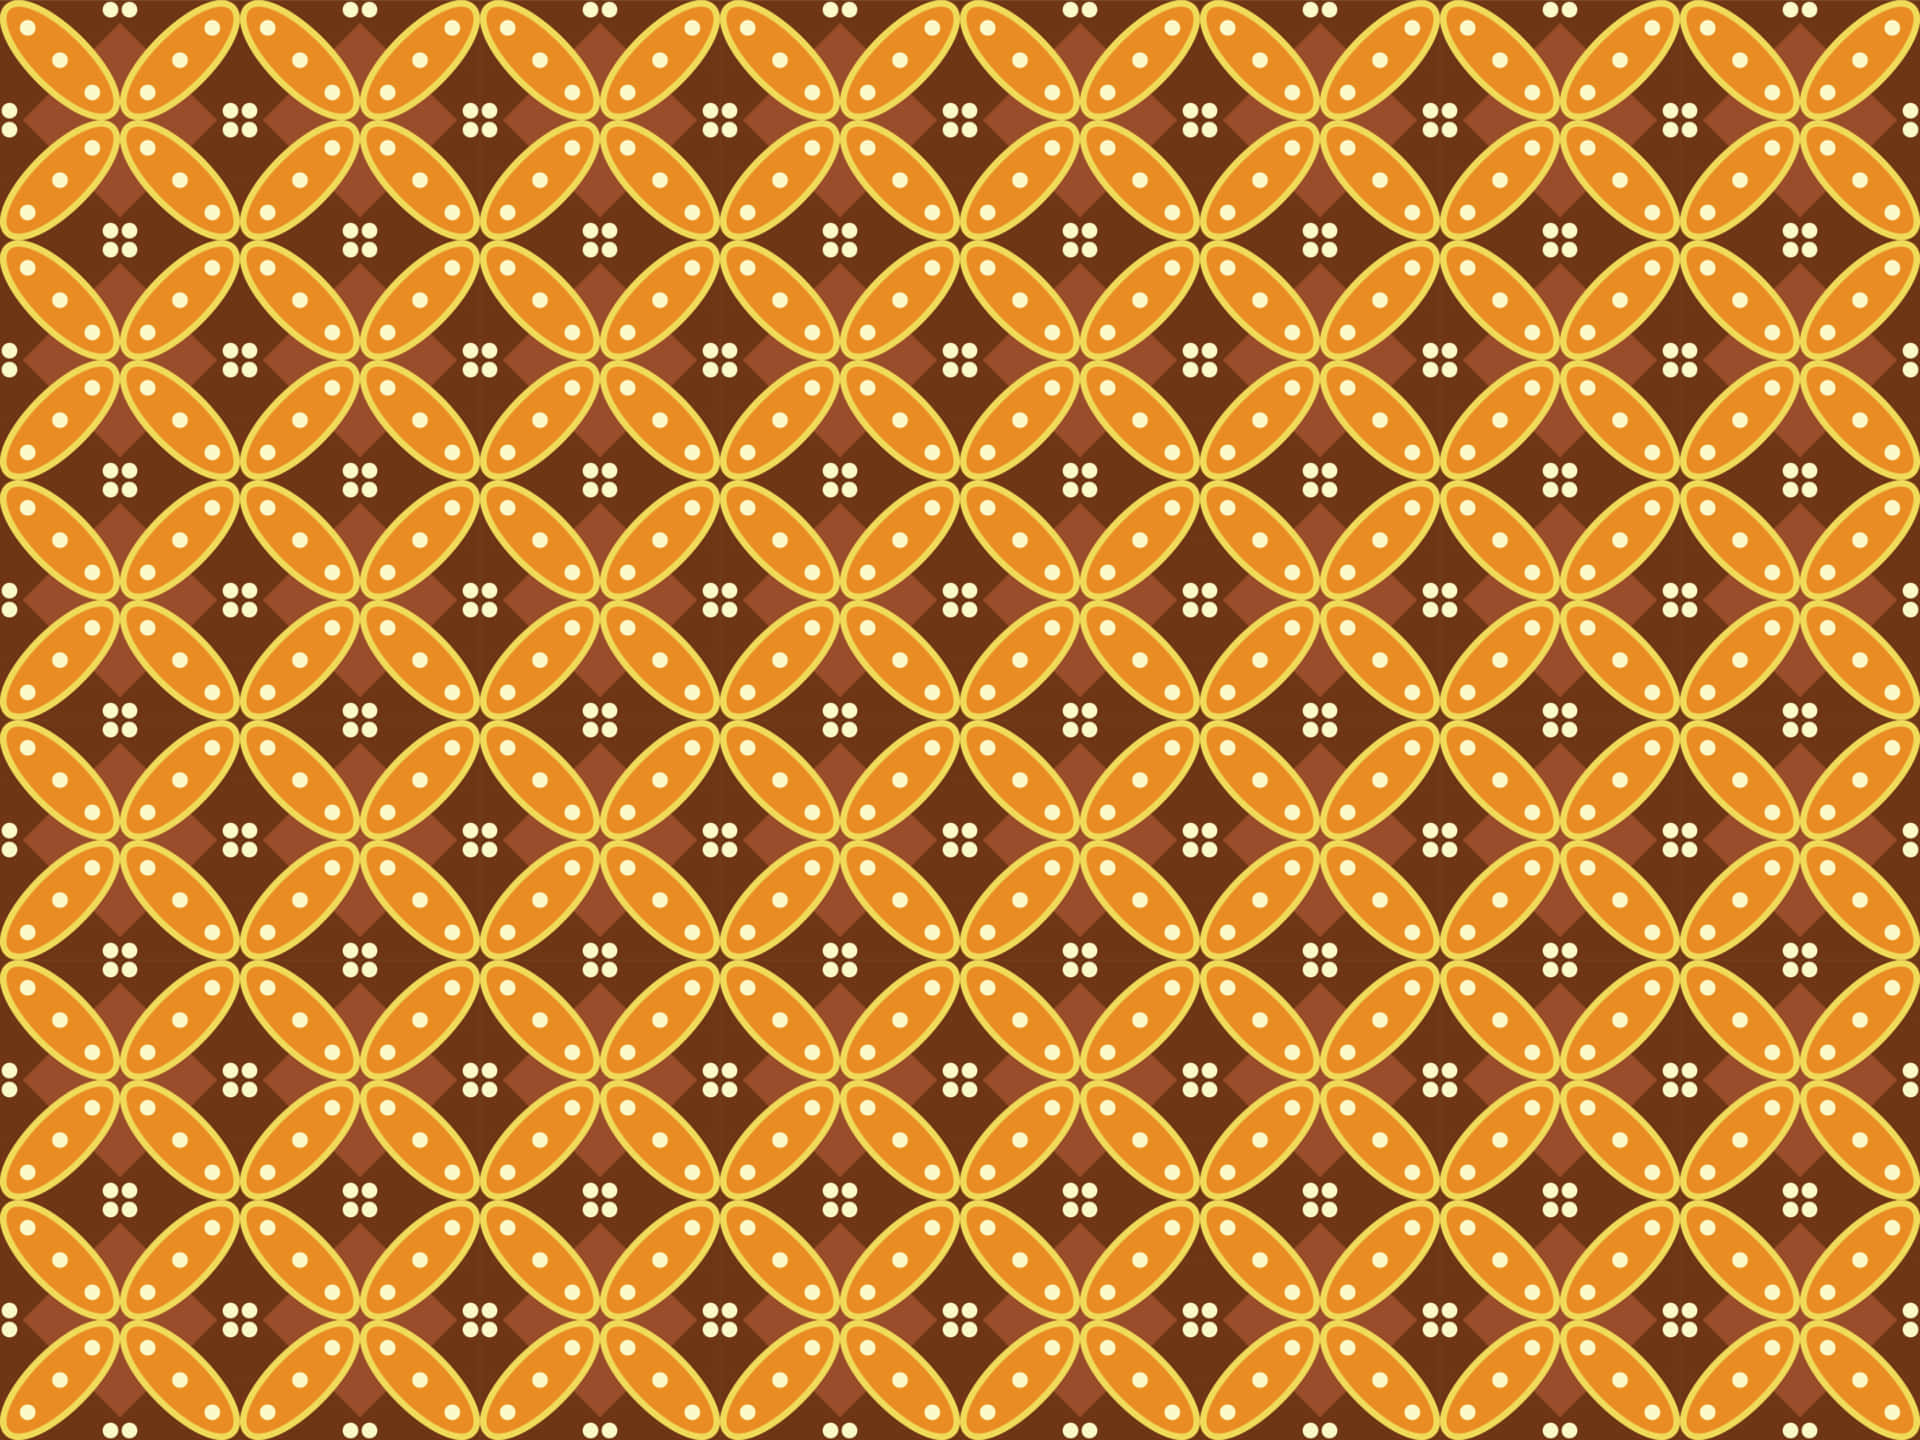 Unosfondo Batik Bellissimo Con Intricati Disegni Su Tessuti Dalle Colorazioni Ricche.